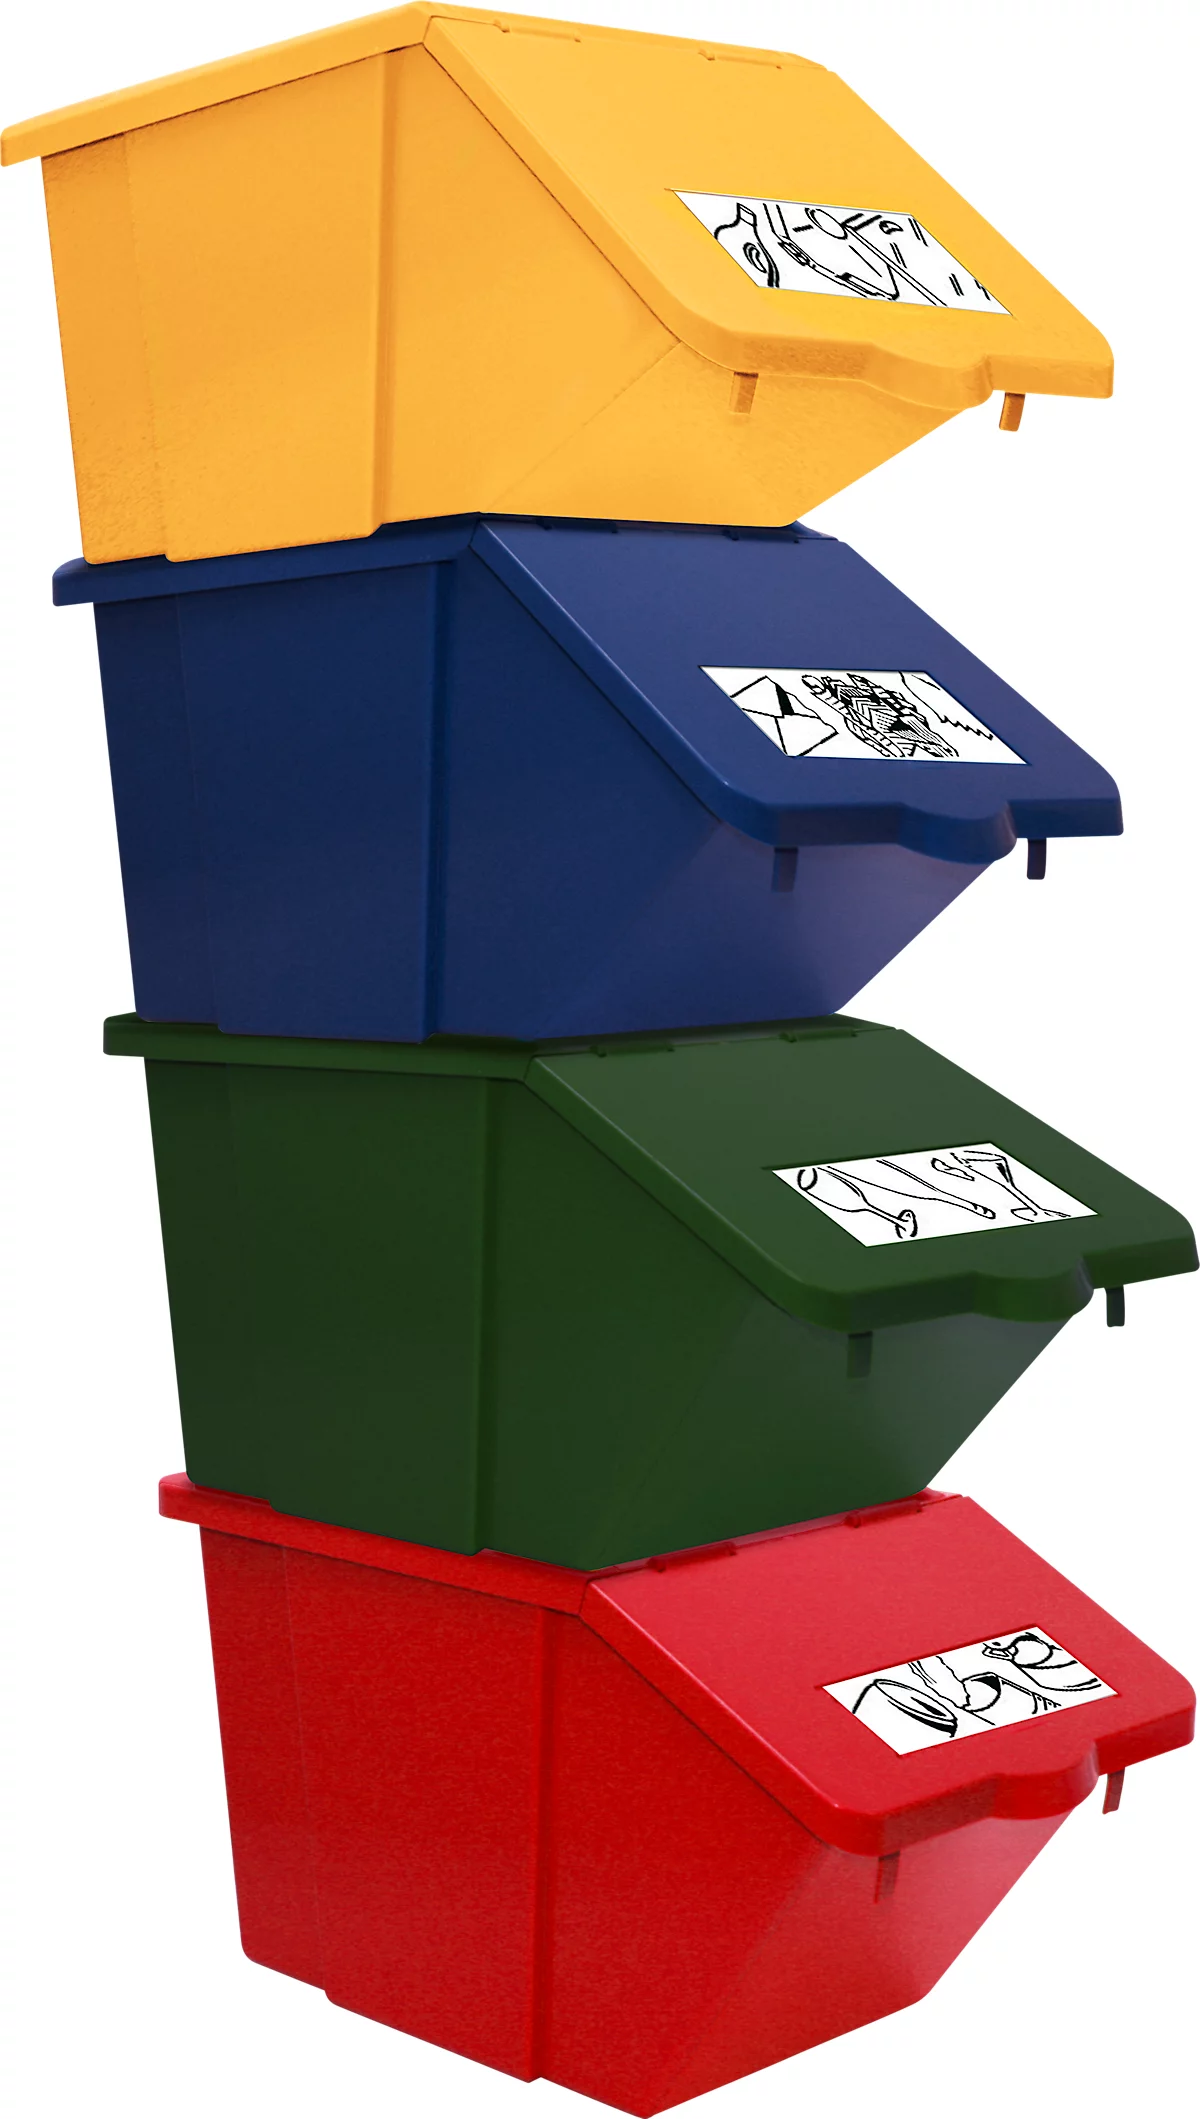 Recogedor de residuos reciclables Ökonom, apilable SET